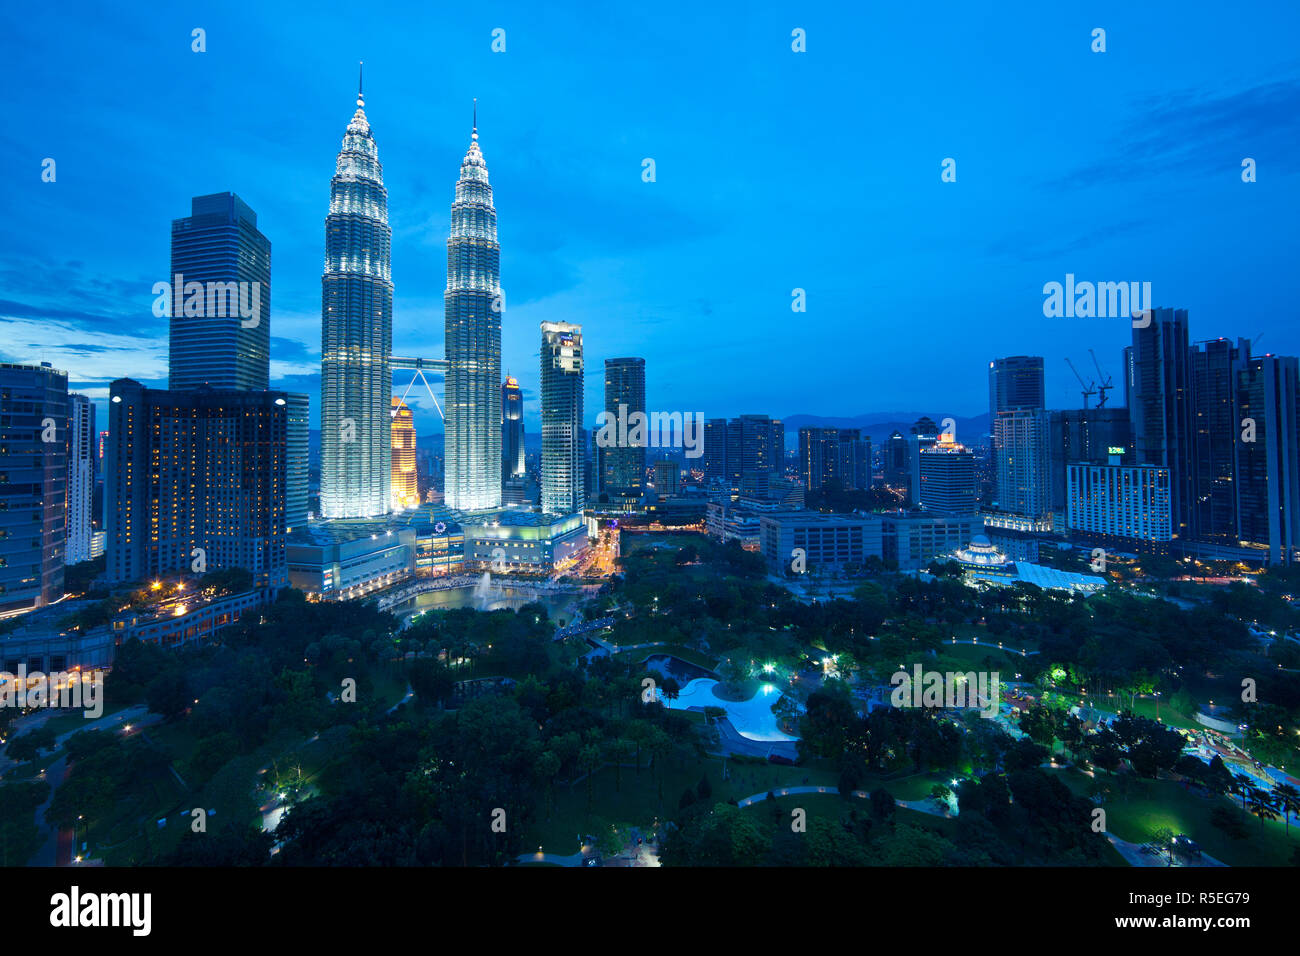 Petronas Towers & KLCC, Kuala Lumpur, Malaysia Stock Photo